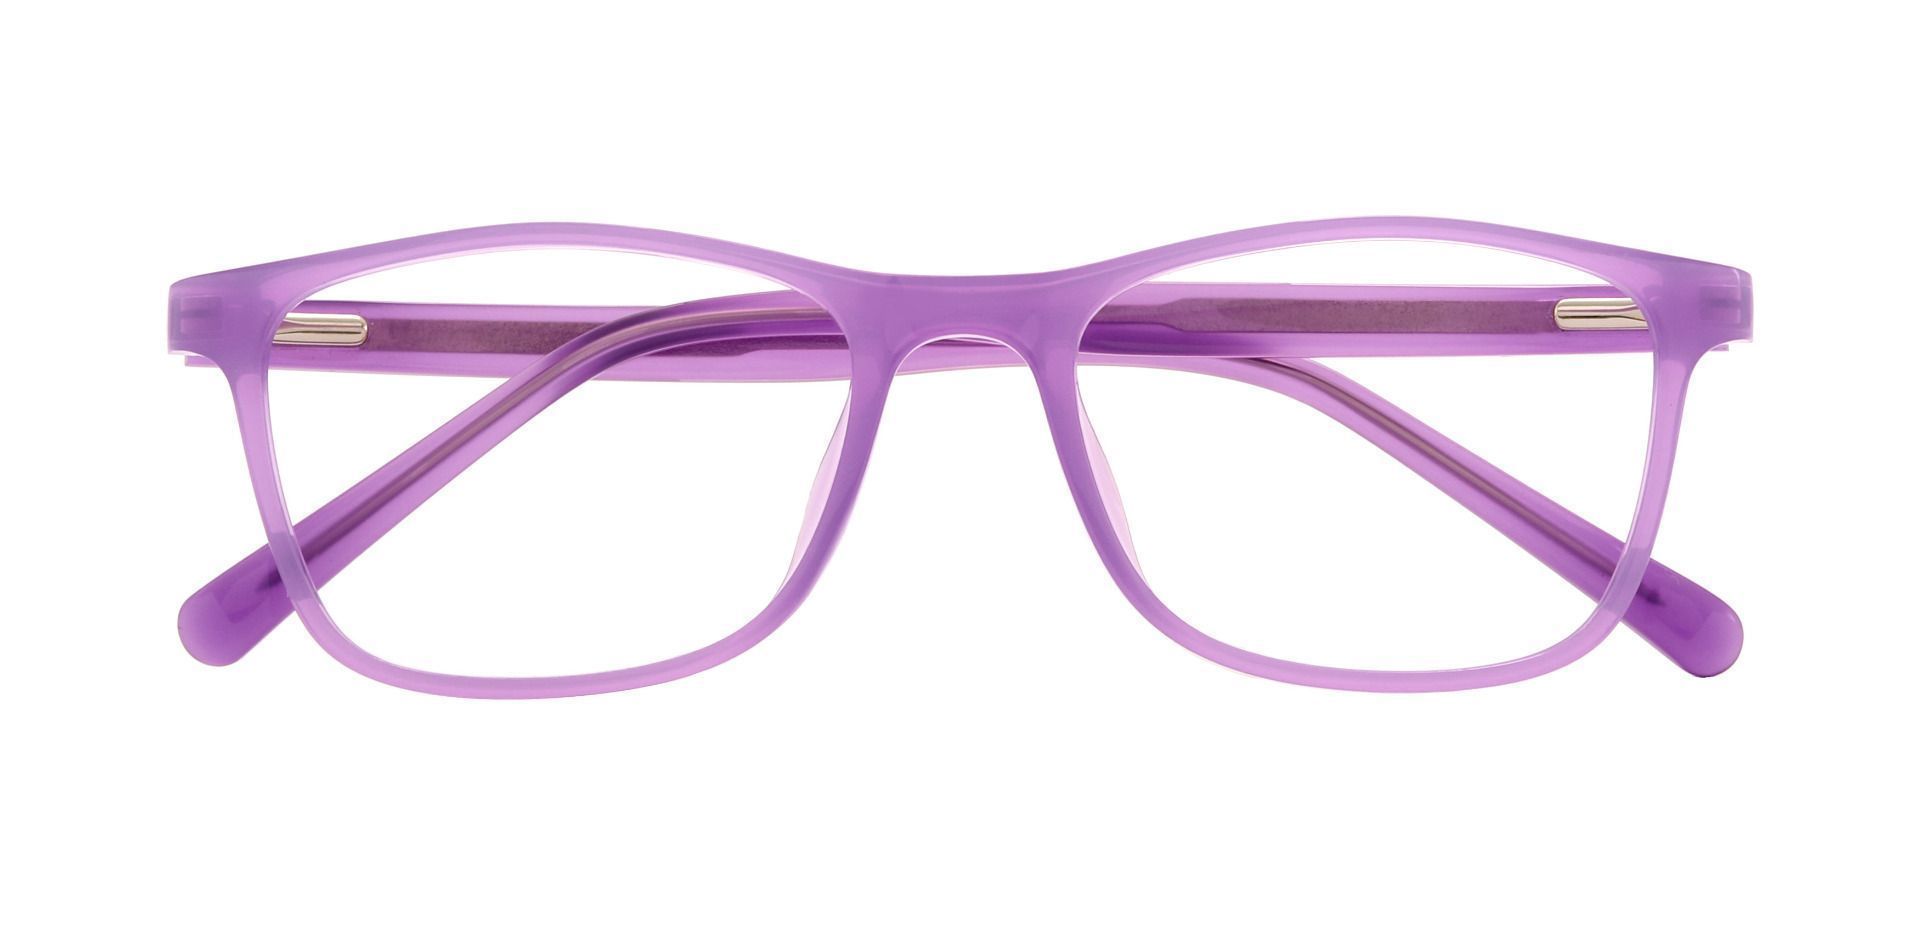 Anton Rectangle Prescription Glasses - Purple